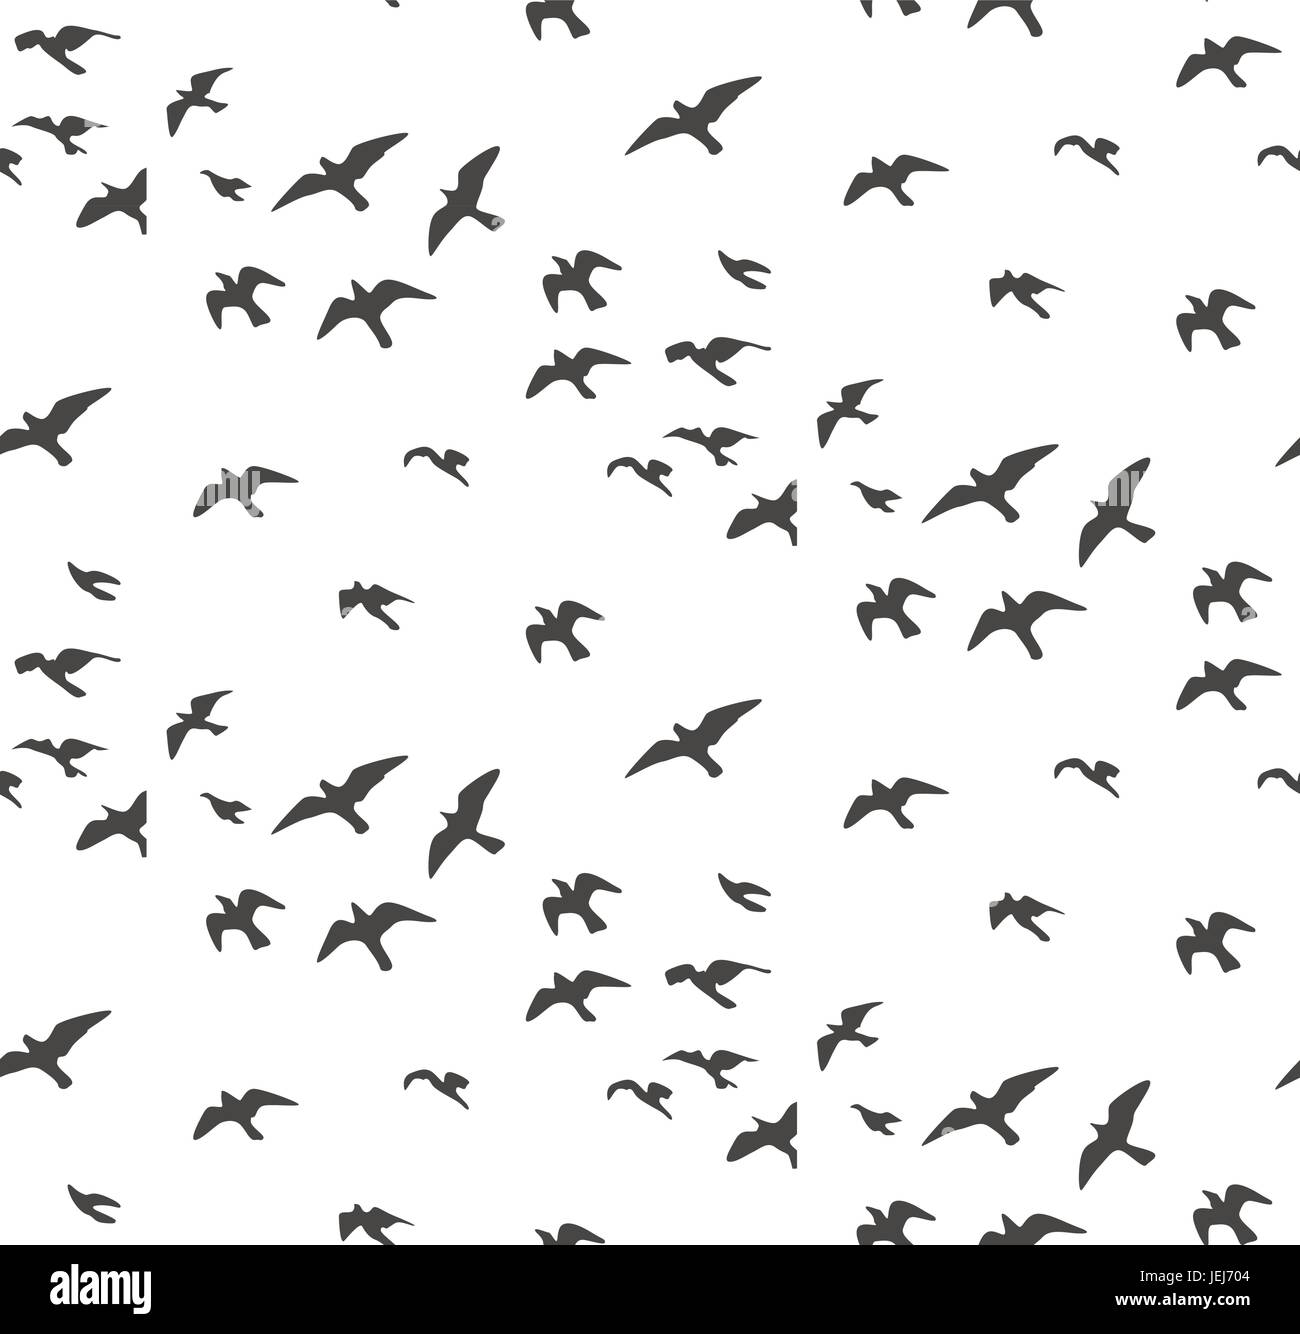 flock of flying birds silhouette